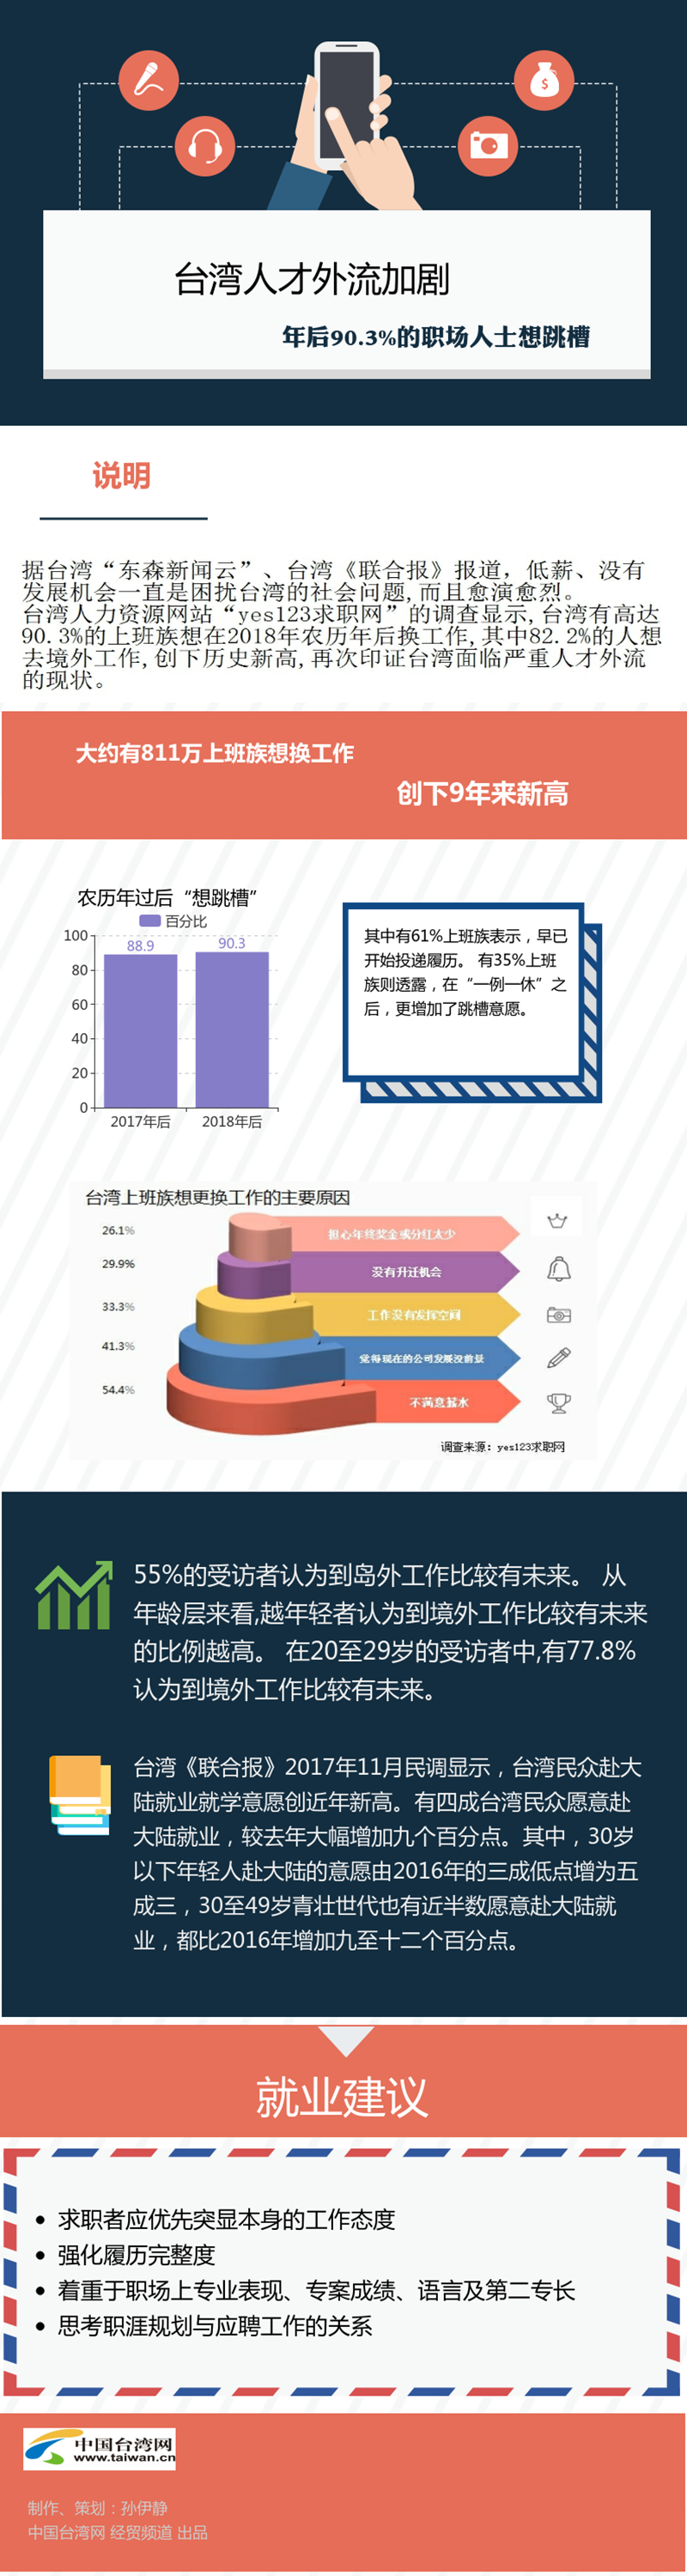 台湾人才外流加剧 年后90.3%的职场人士想跳槽